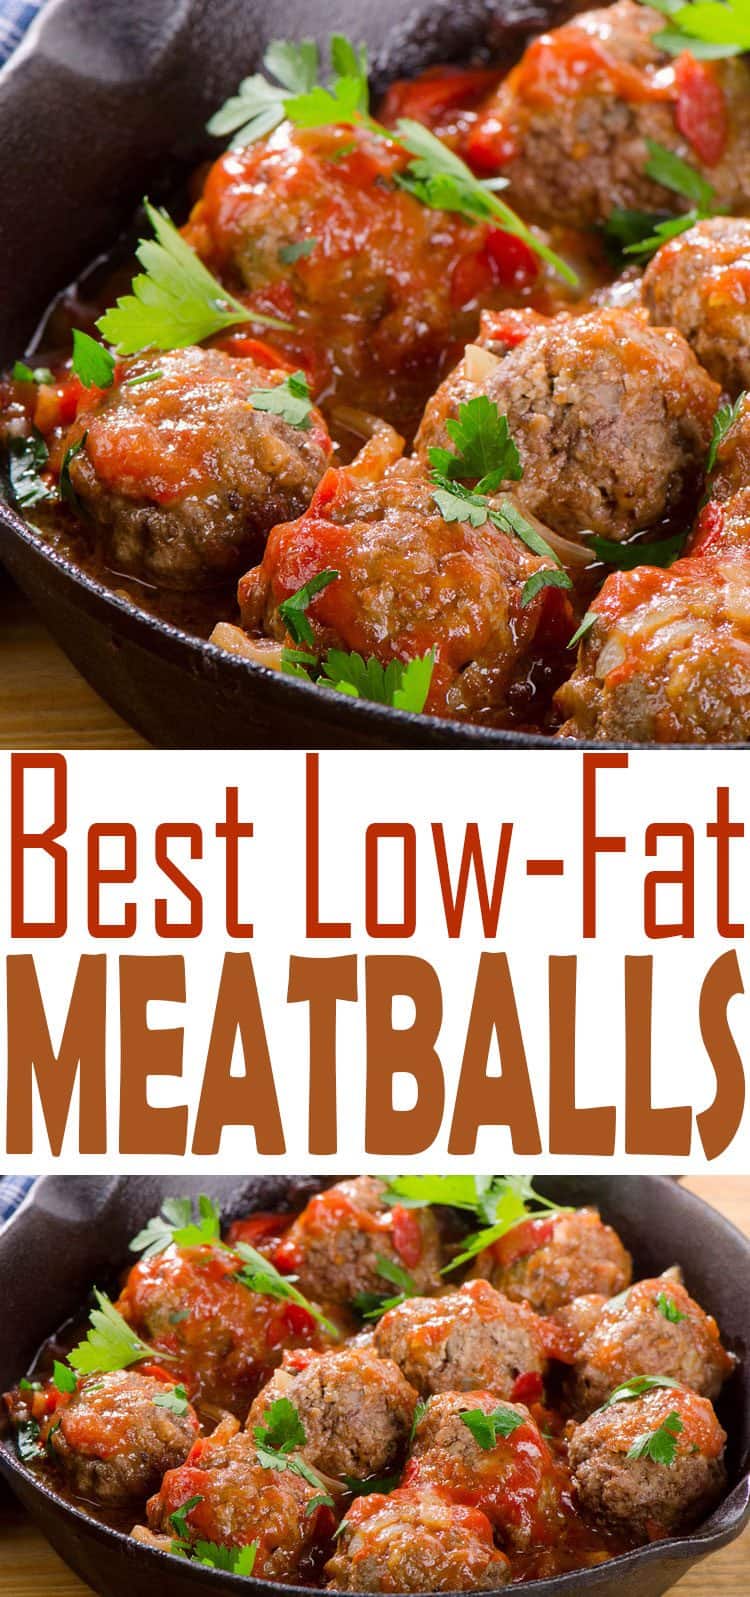 Low Fat Meatball 96